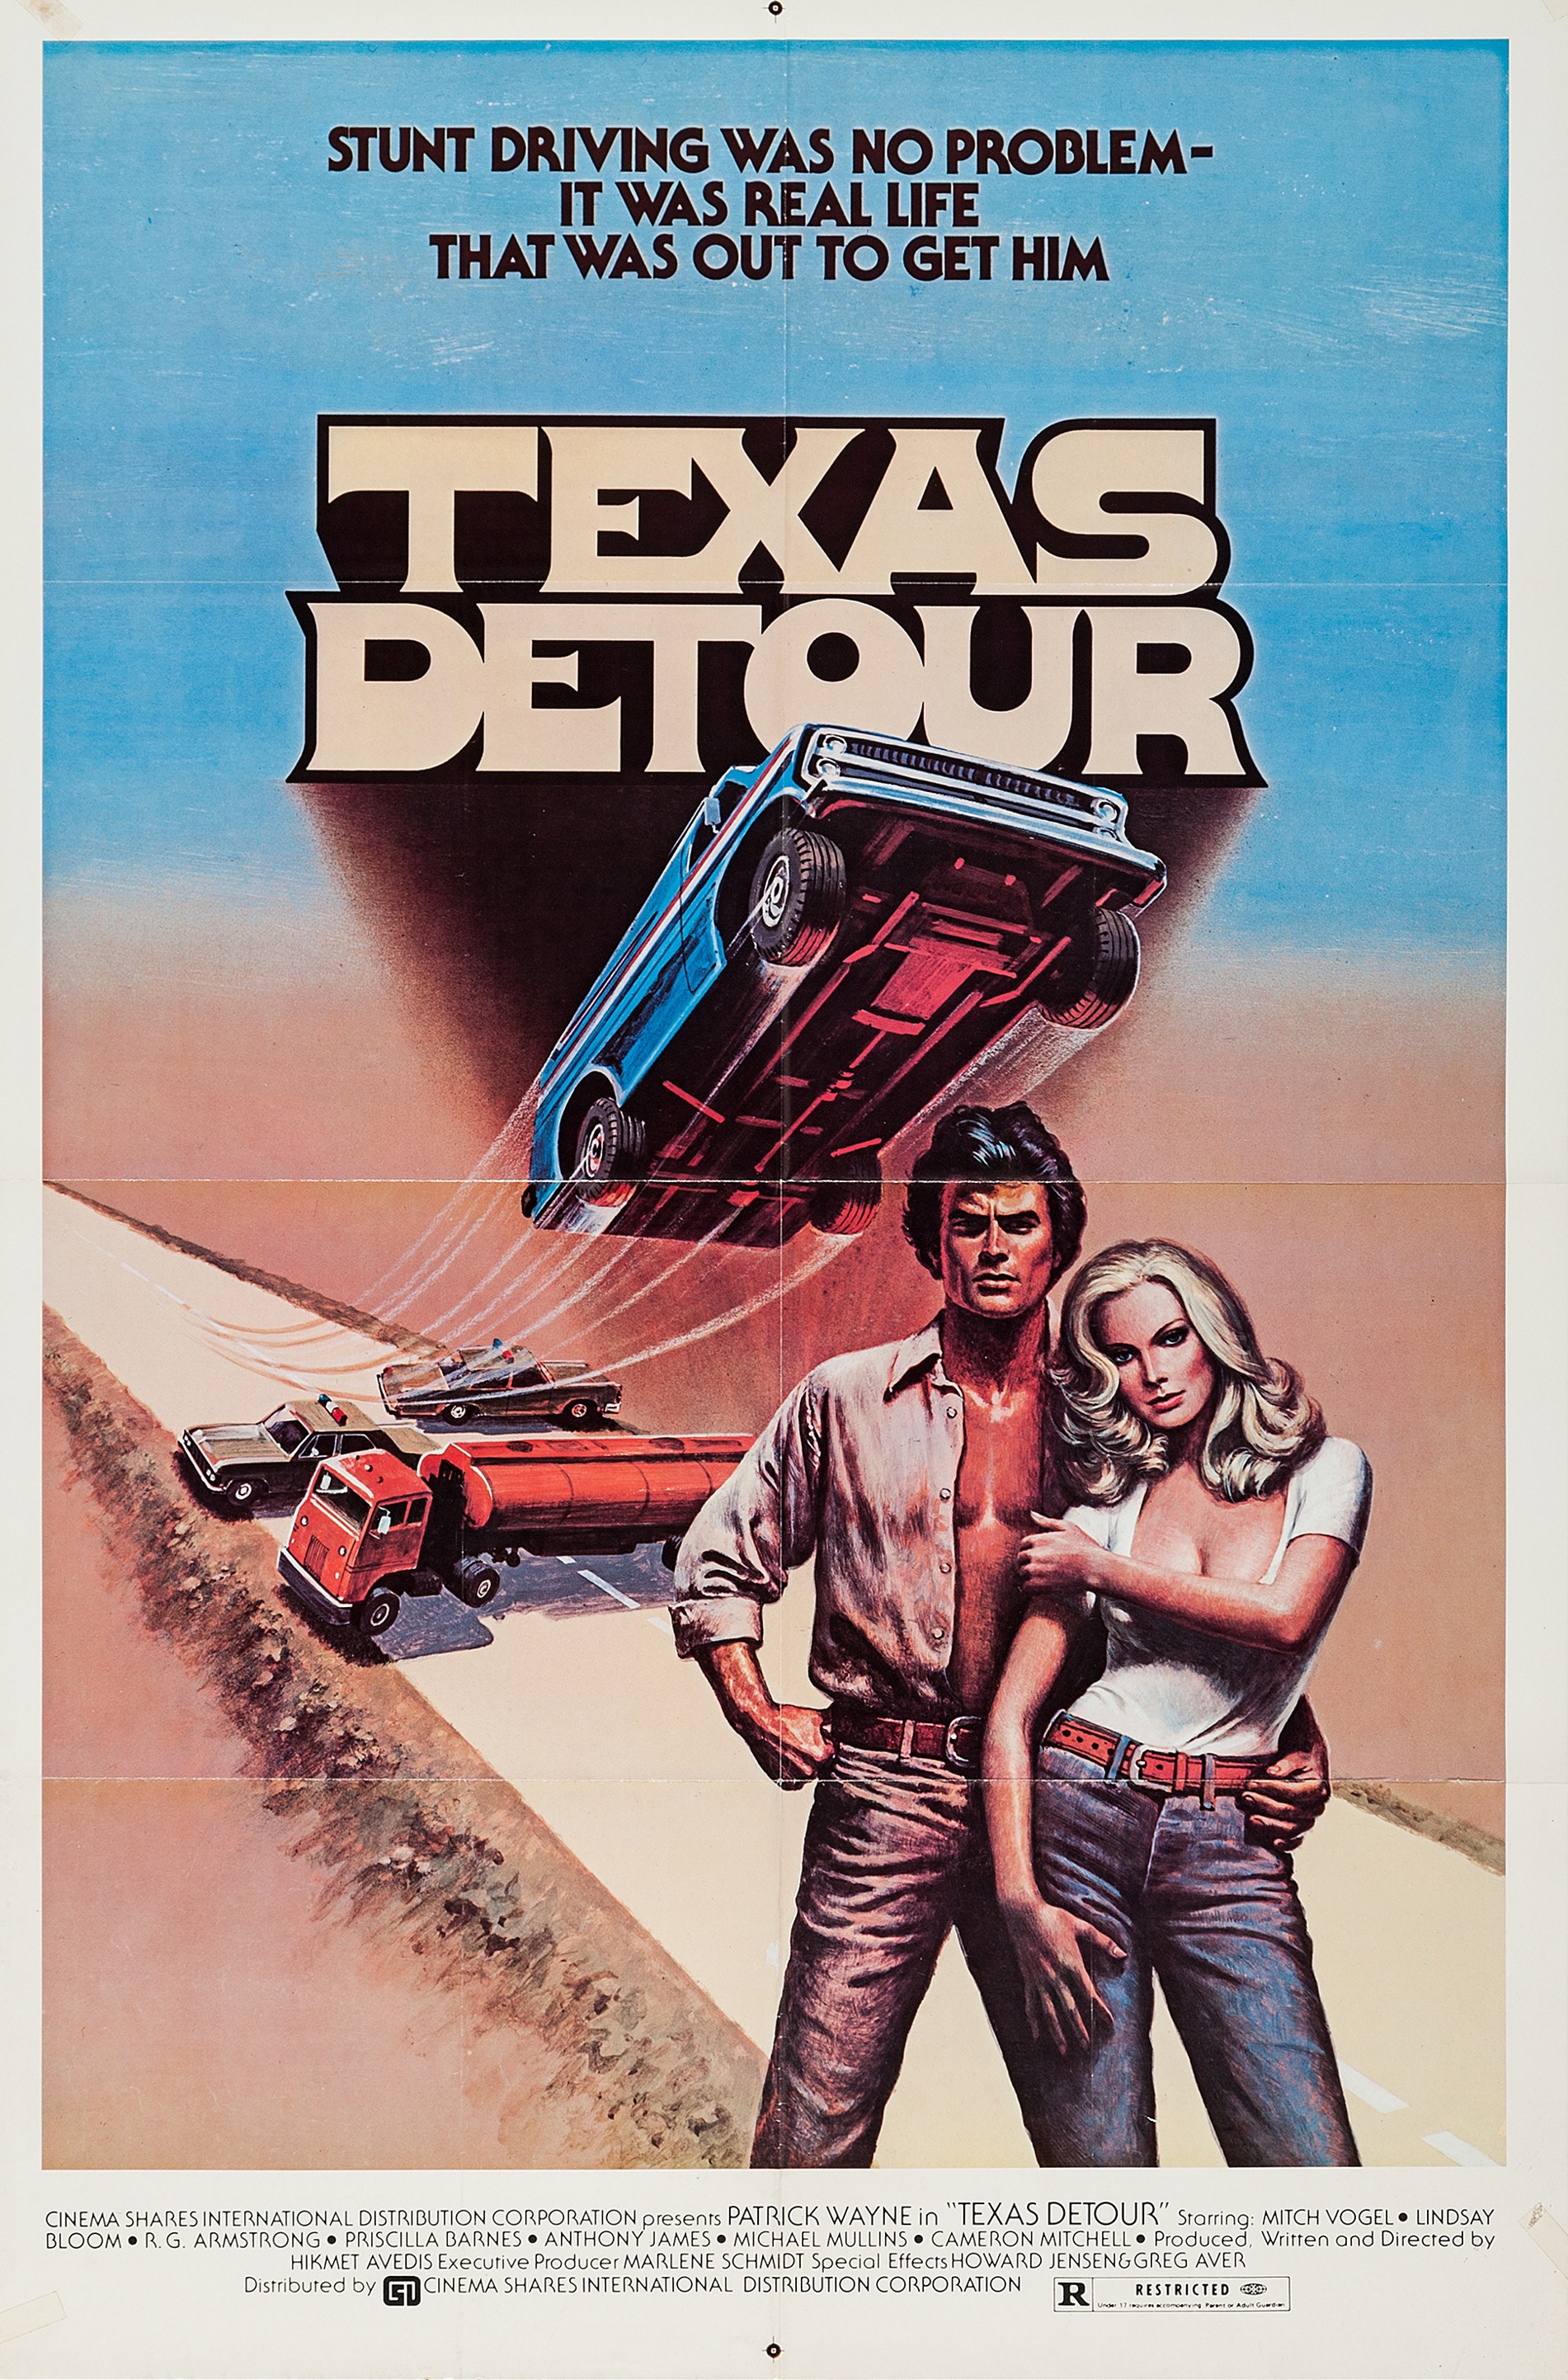 Texas Detour (1978) Screenshot 2 